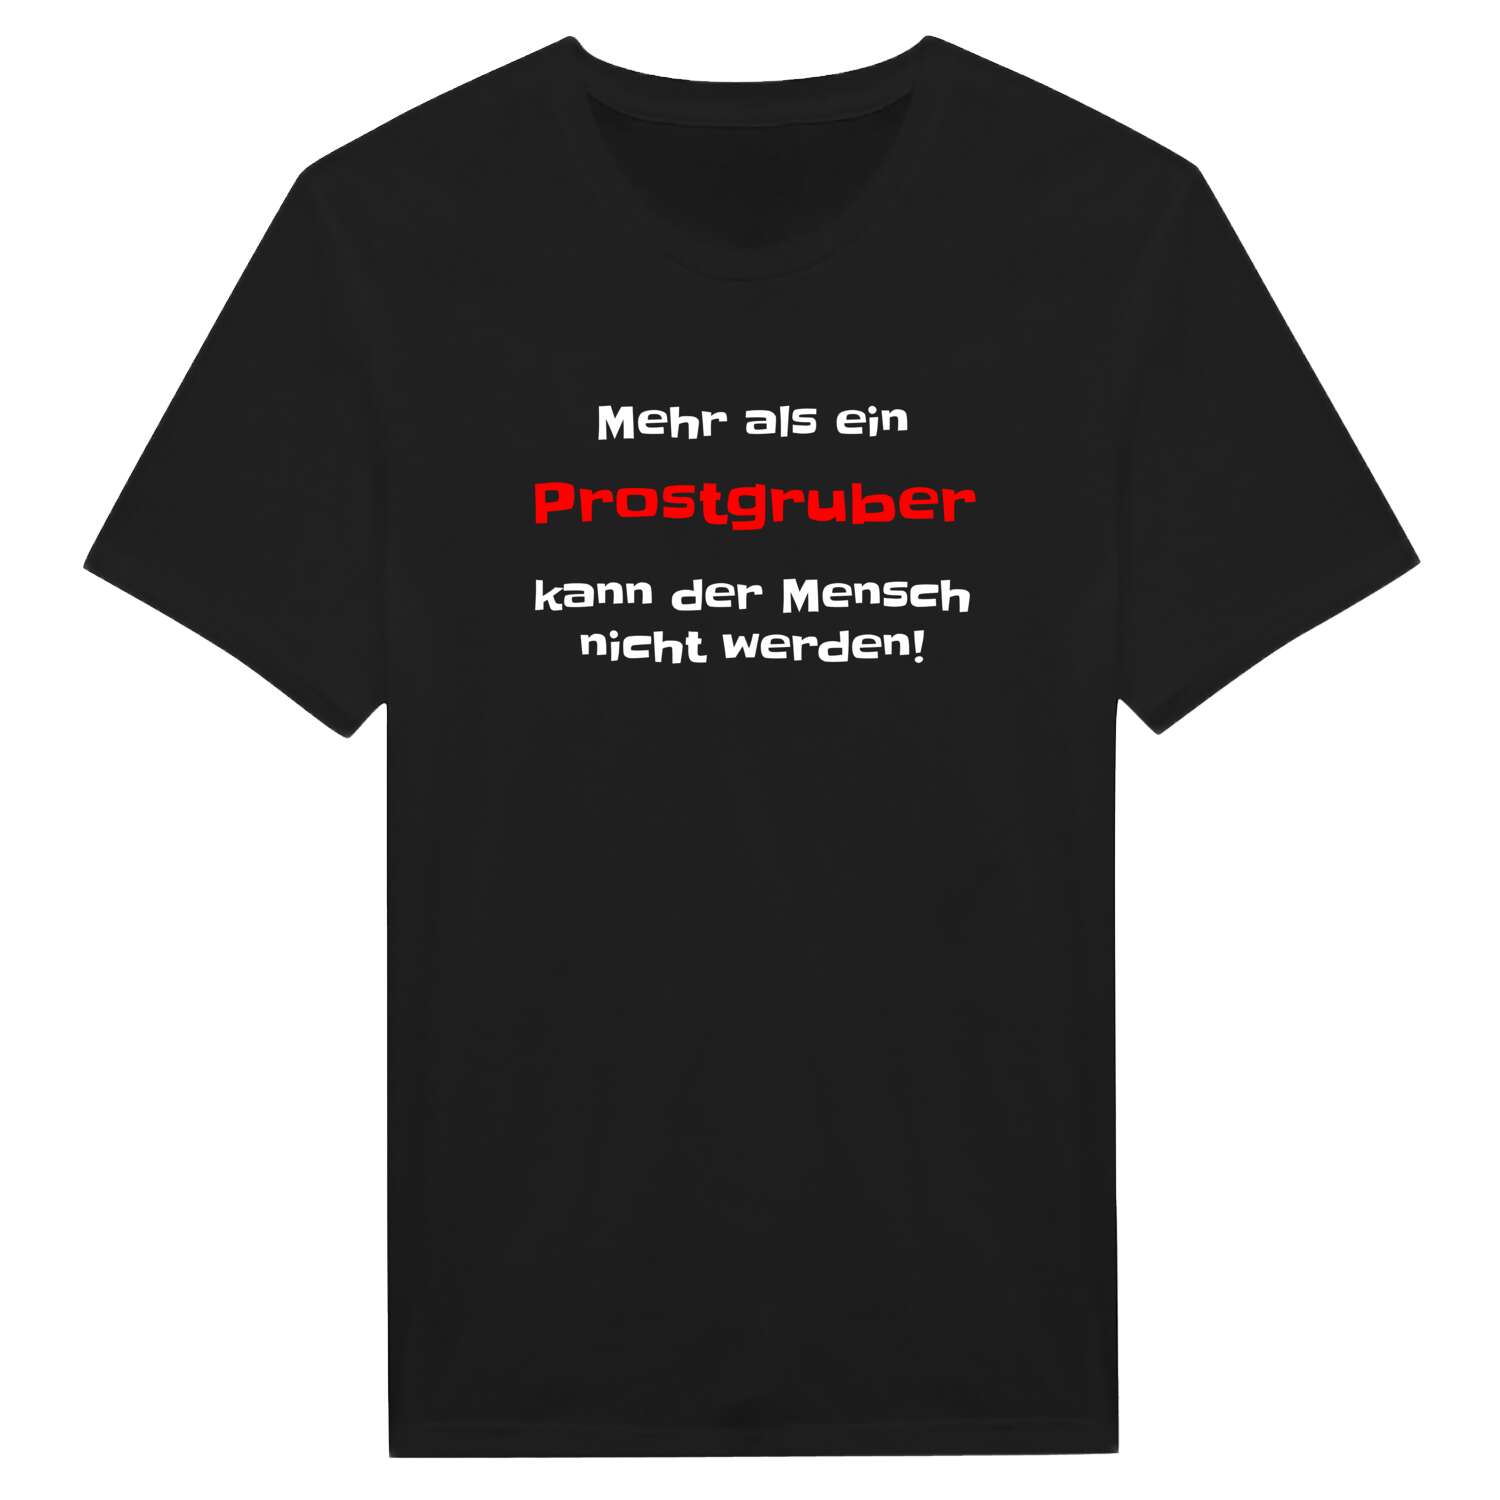 Prostgrub T-Shirt »Mehr als ein«